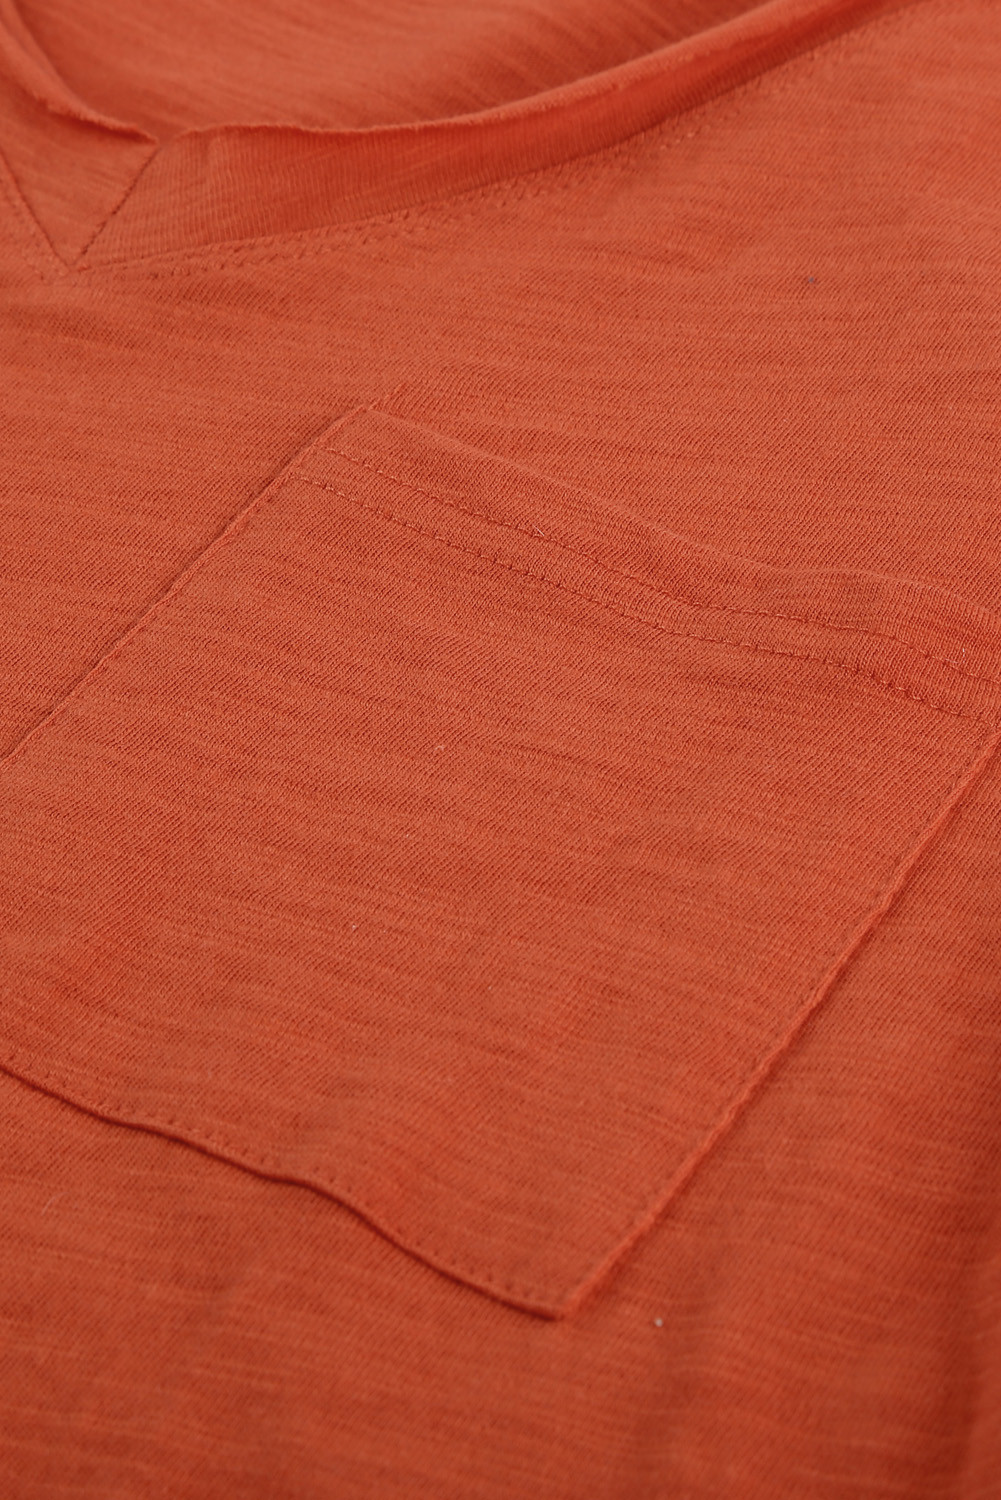 Customized T-Shirts - Orange V Neck Short Sleeves Cotton Blend Tee